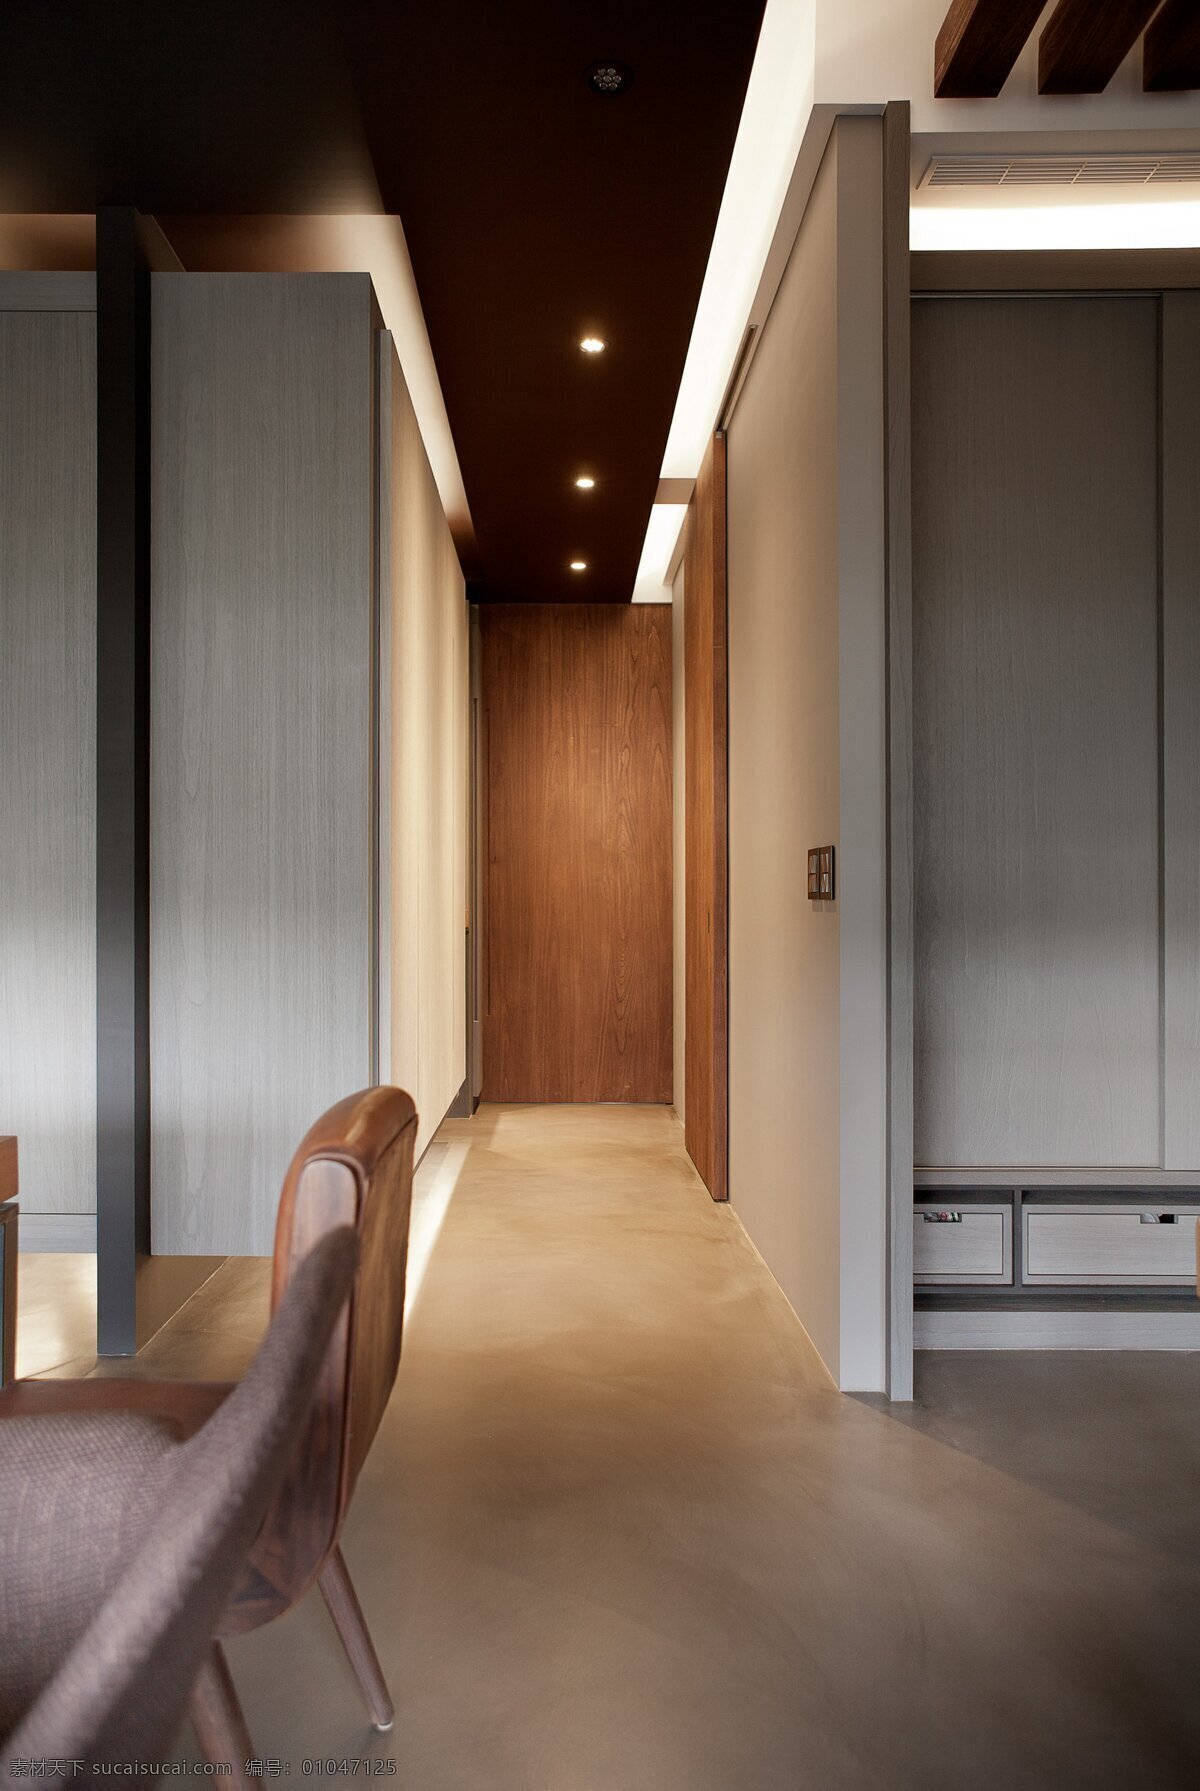 简约 风 室内设计 餐厅 走廊 效果图 现代 家装 家居 家具 餐桌